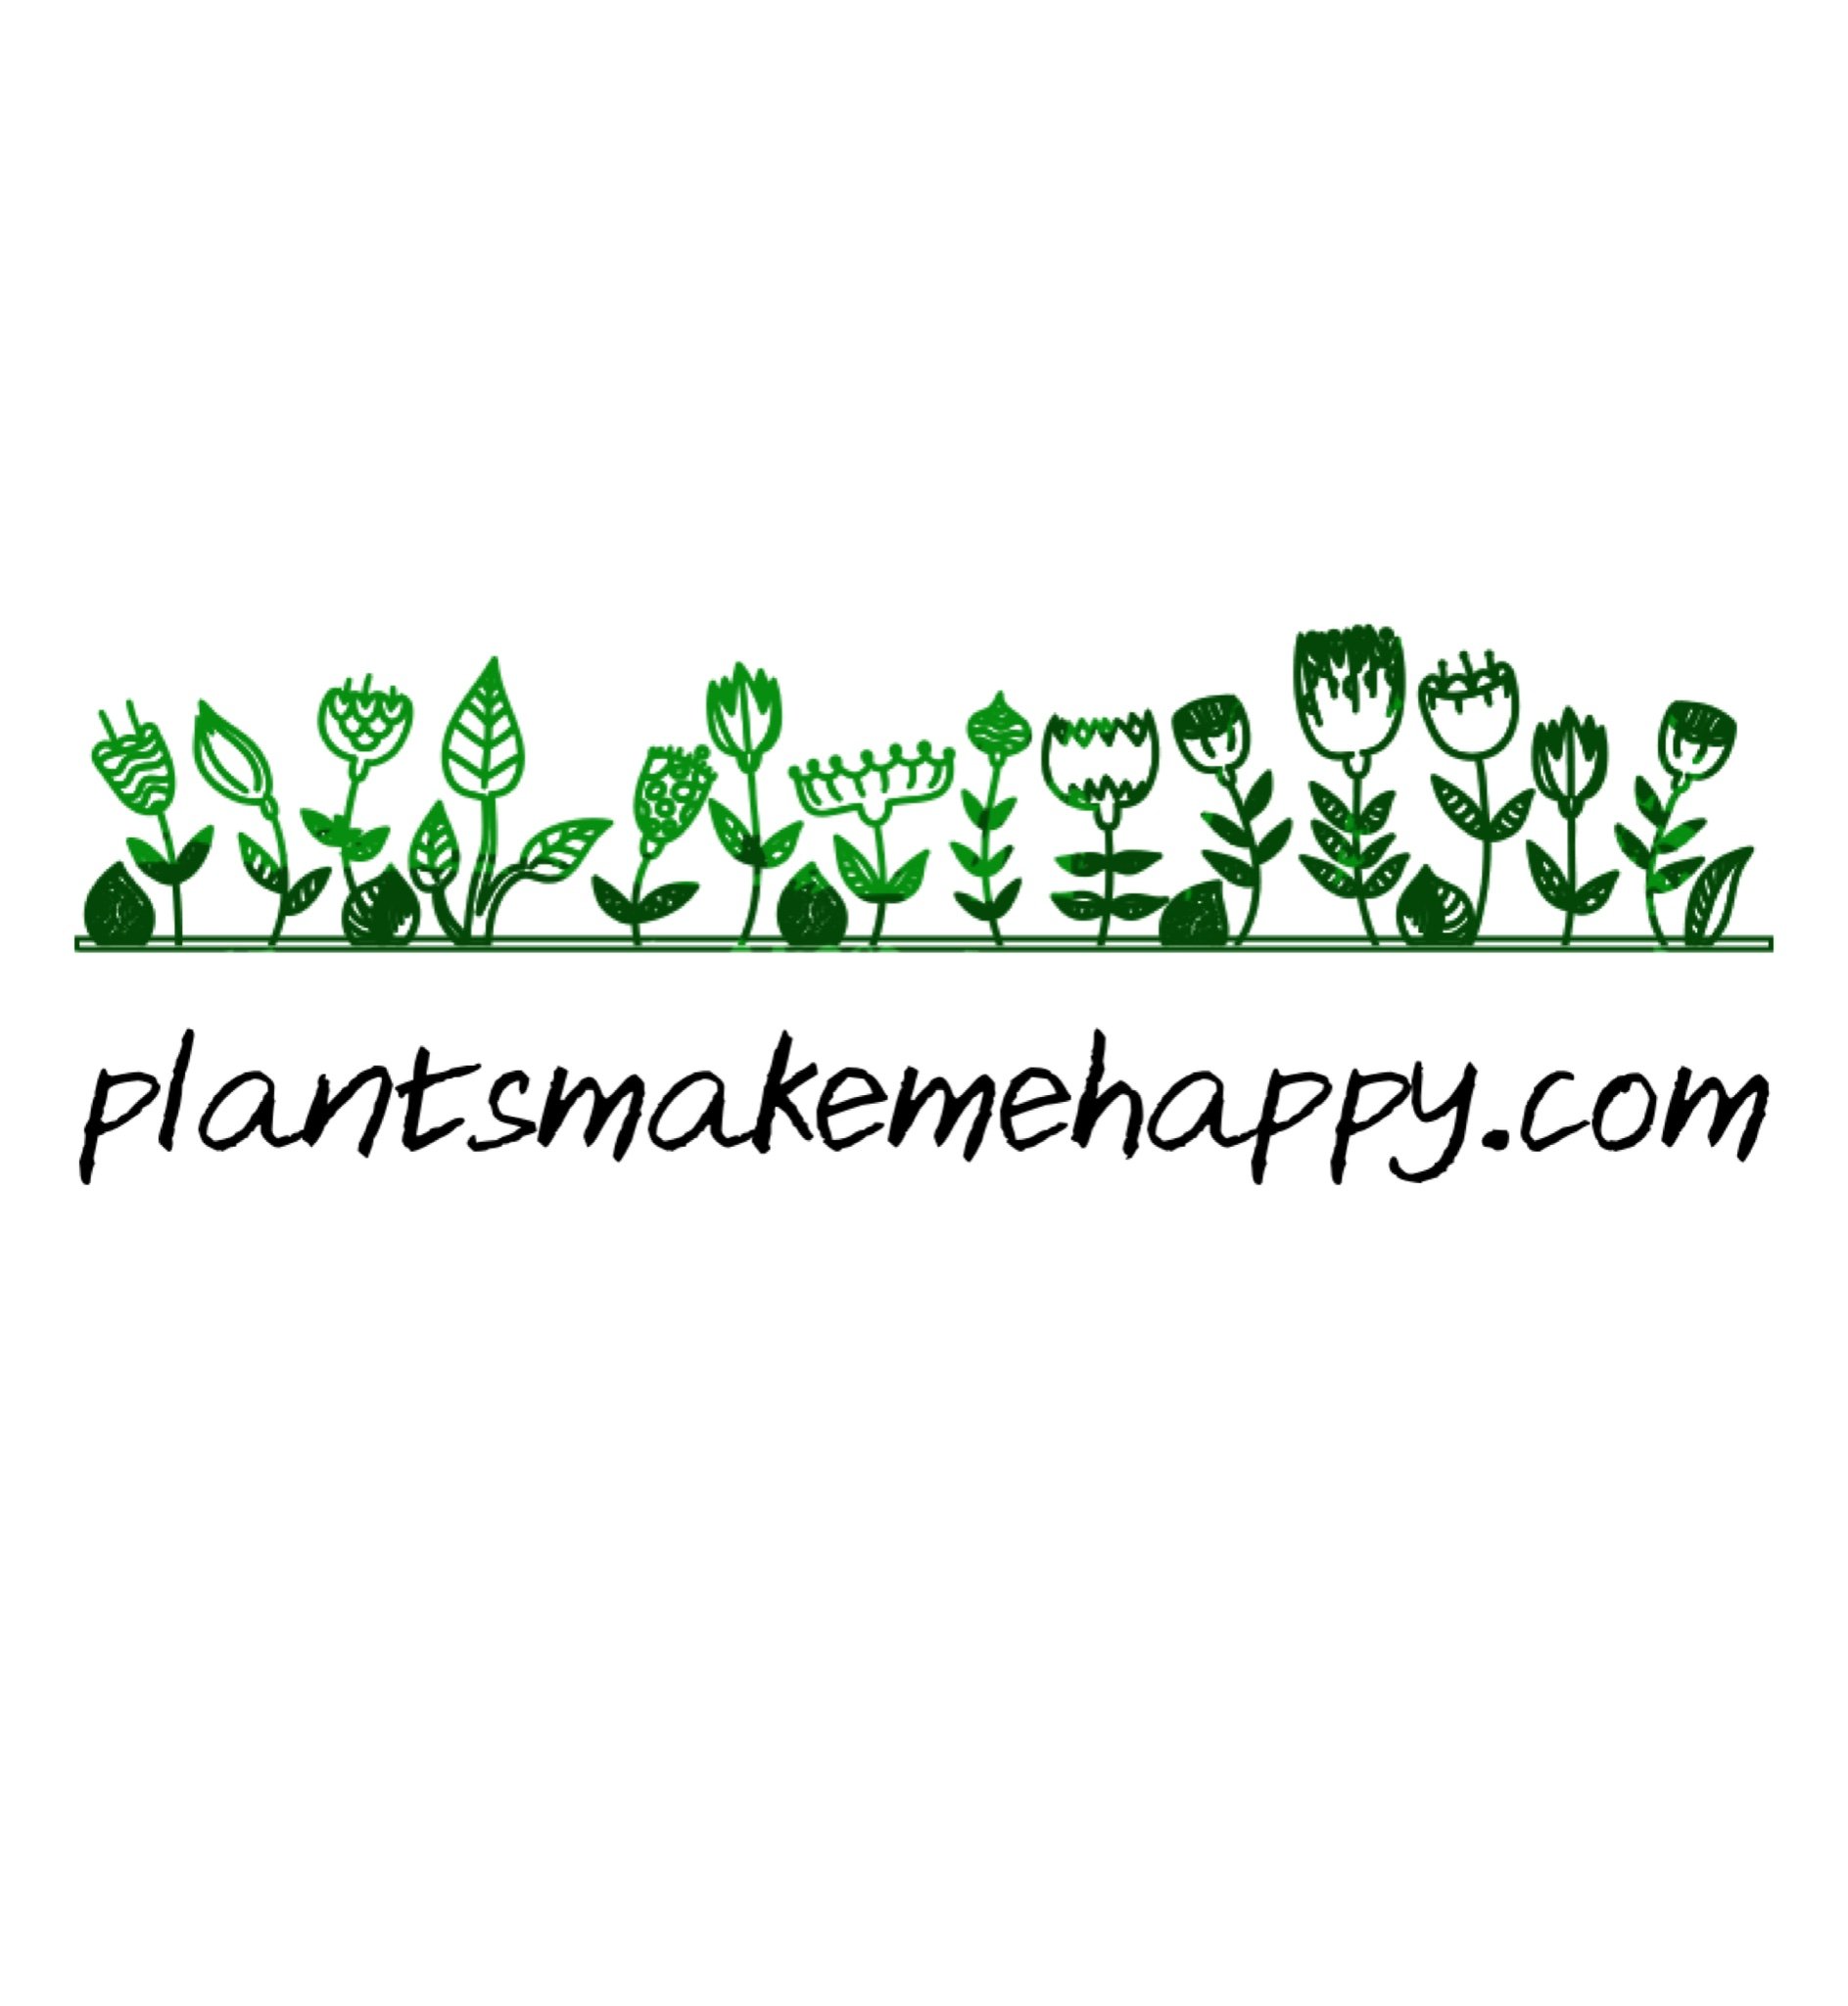 Plantsmakemehappy